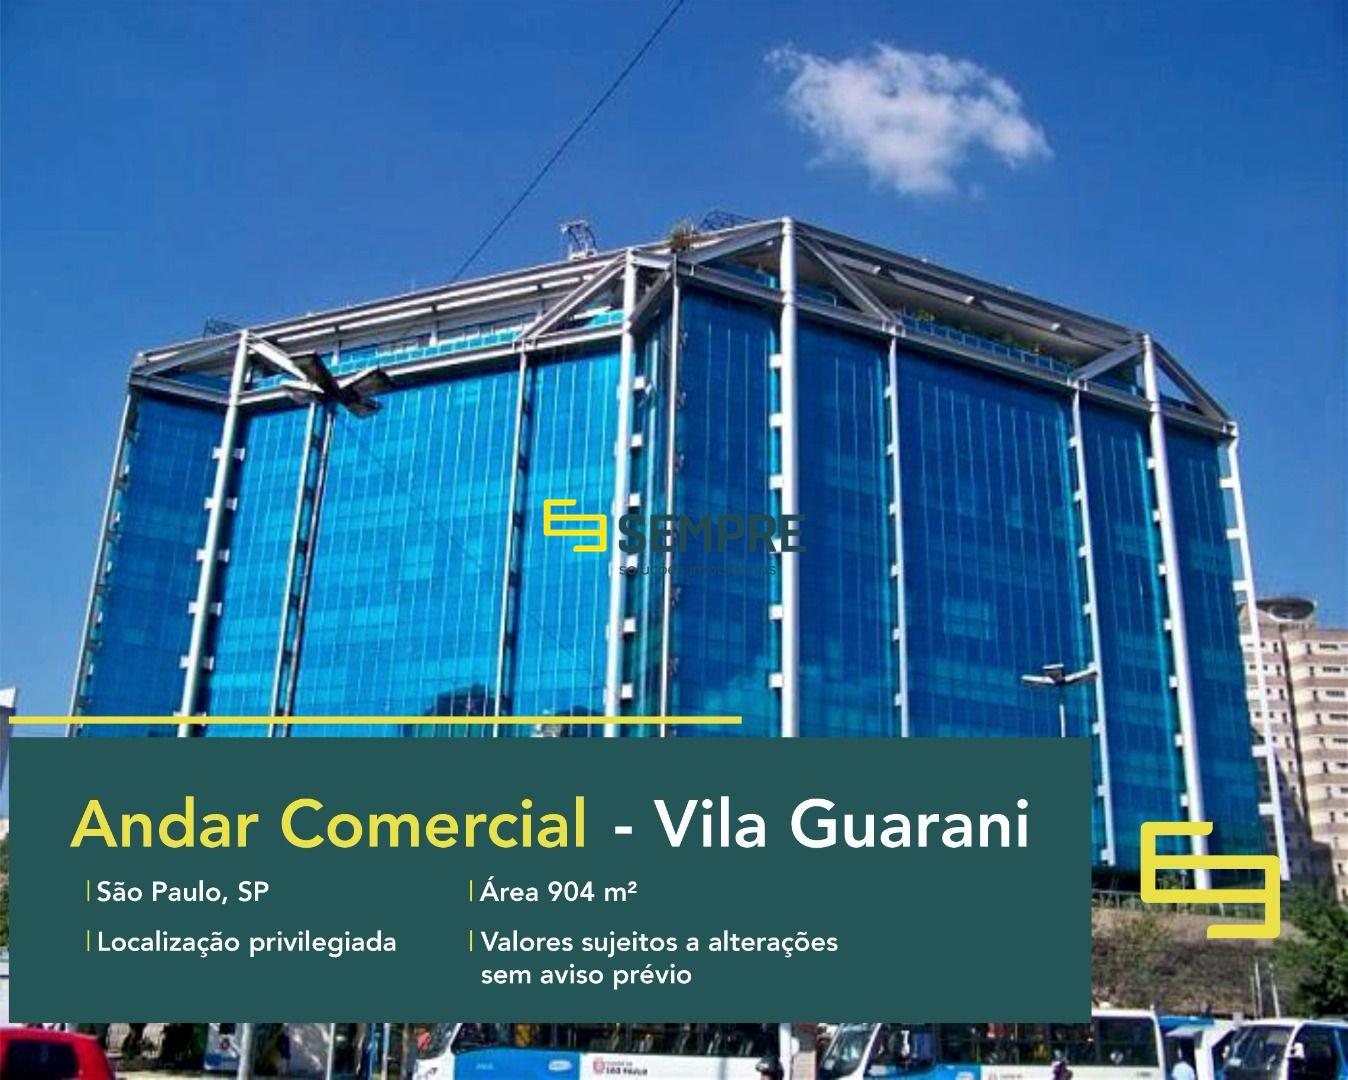 Laje corporativa no Vila Guarani para locação em São Paulo, excelente localização. O estabelecimento conta com área de 904 m².